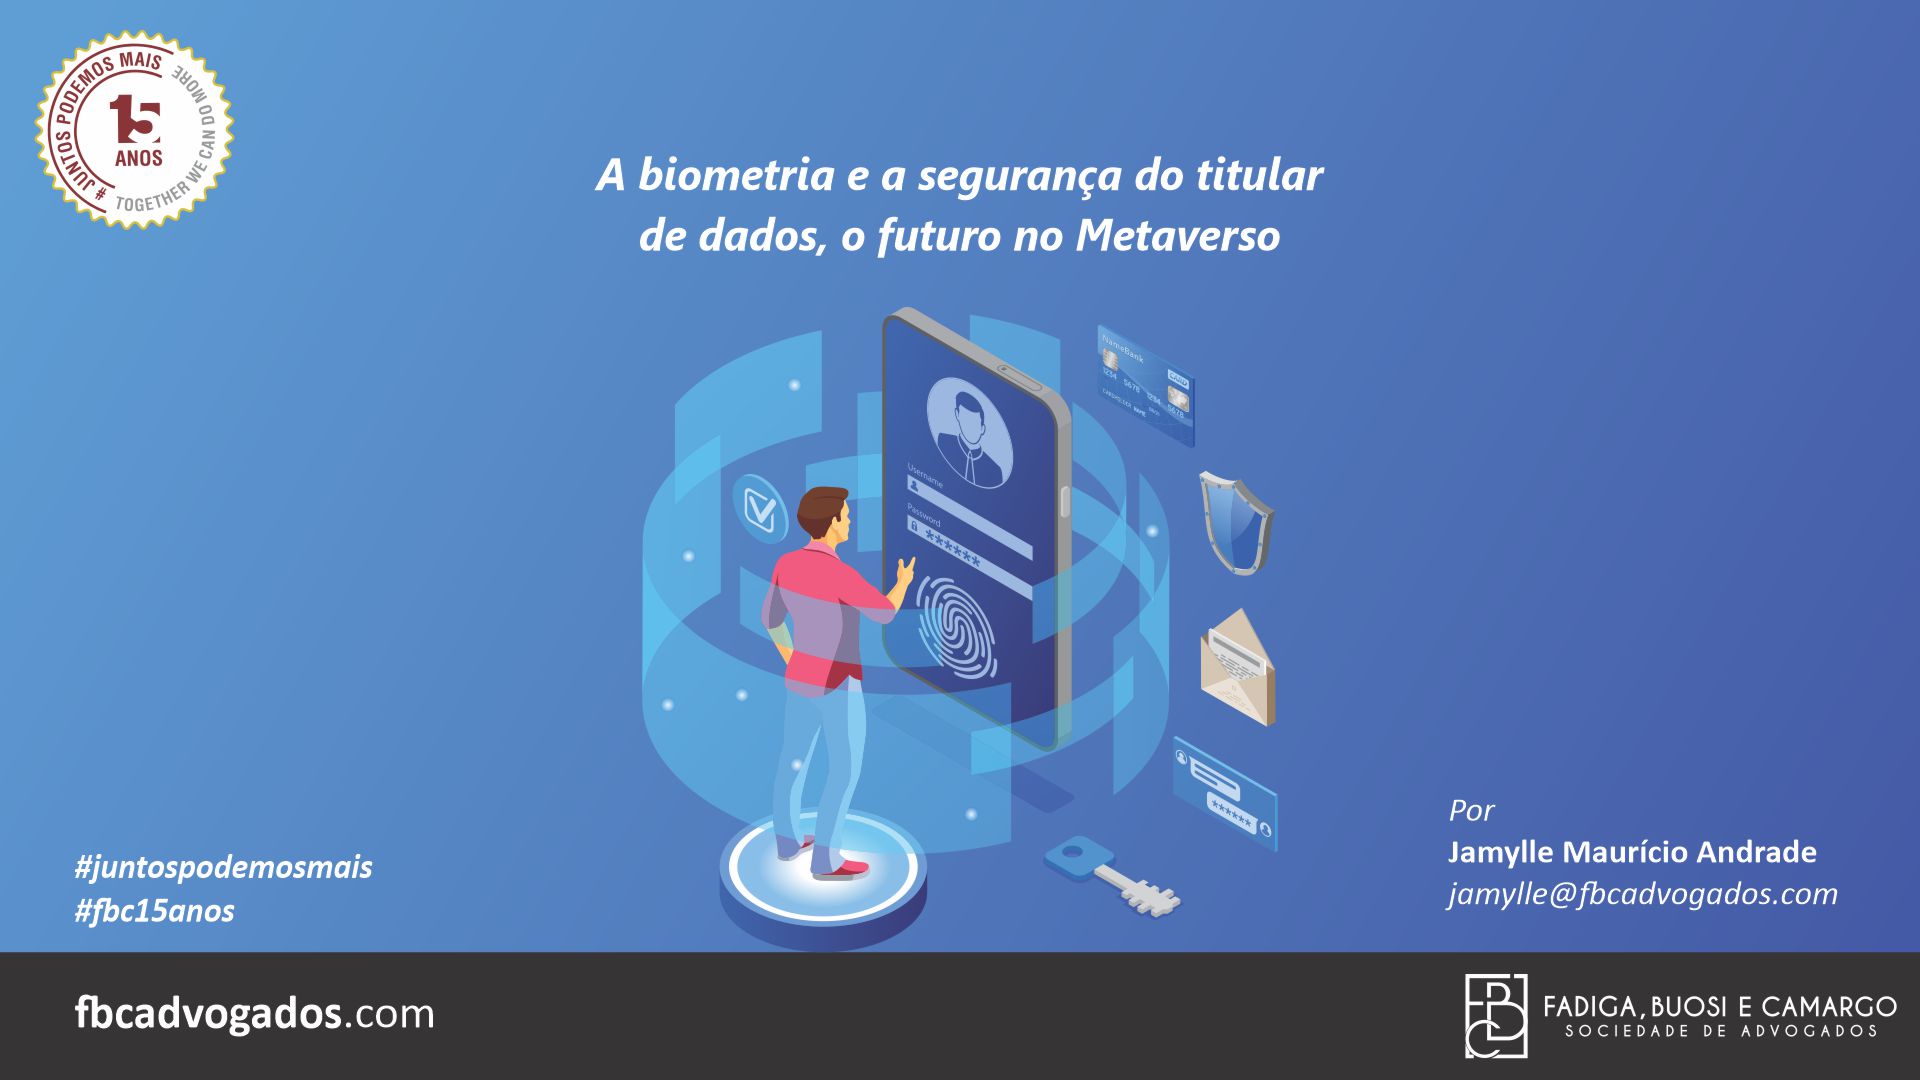 A biometria e a segurança do titular de dados, o futuro no Metaverso.